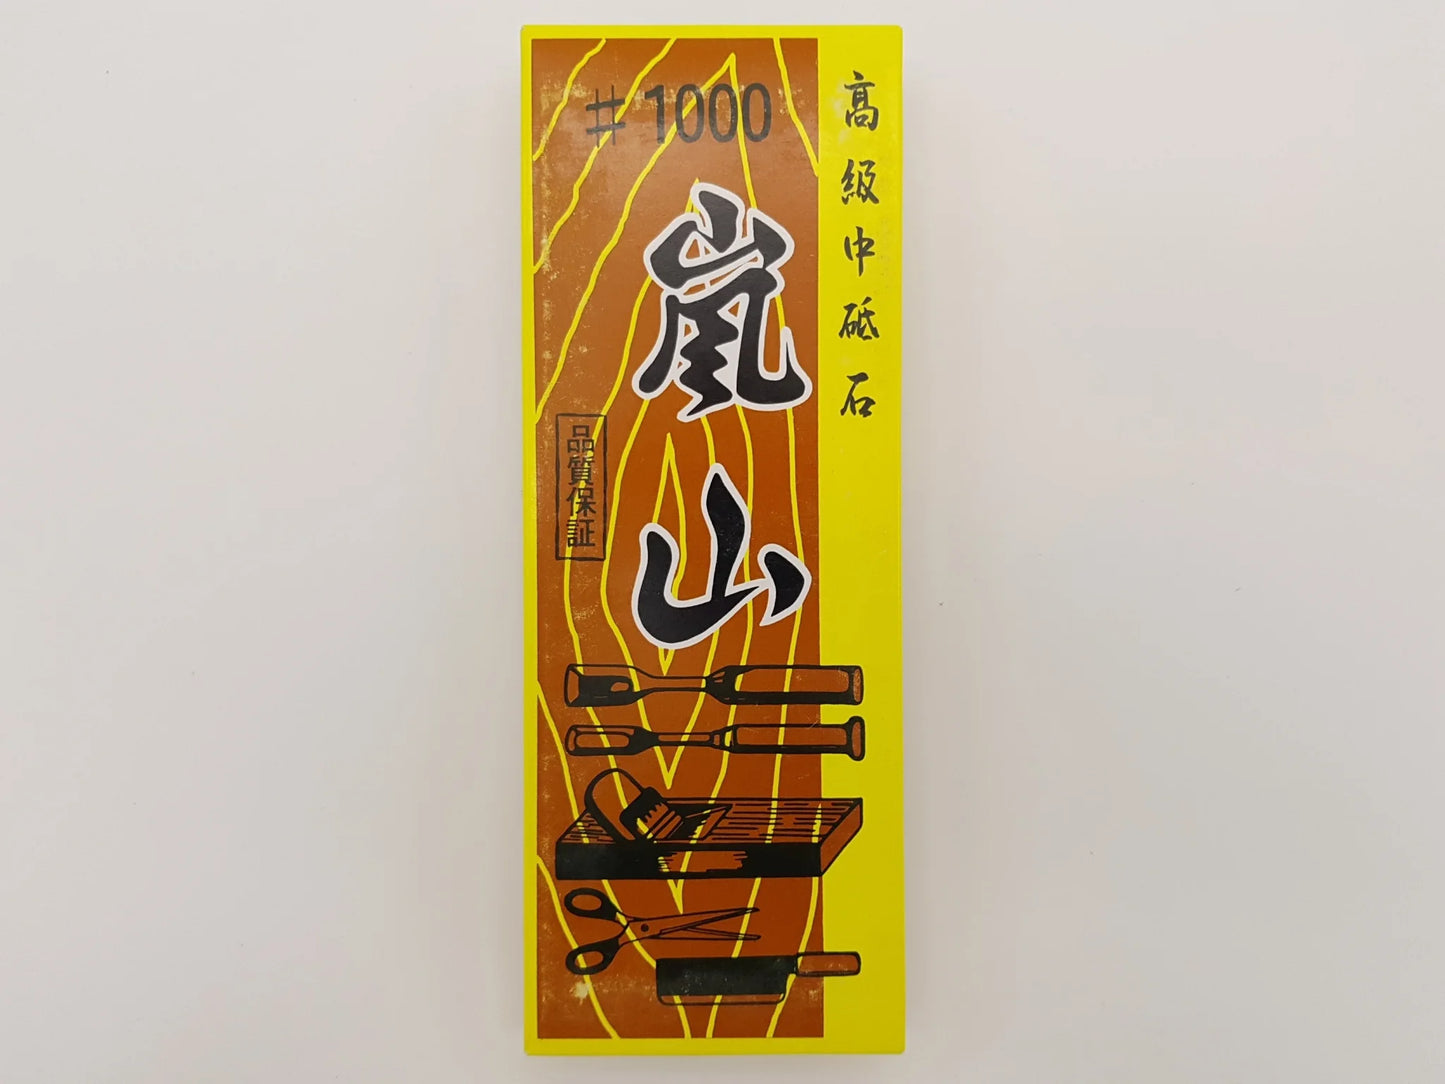 Pierre à eau 1000 - Traditionnelle - Imanishi